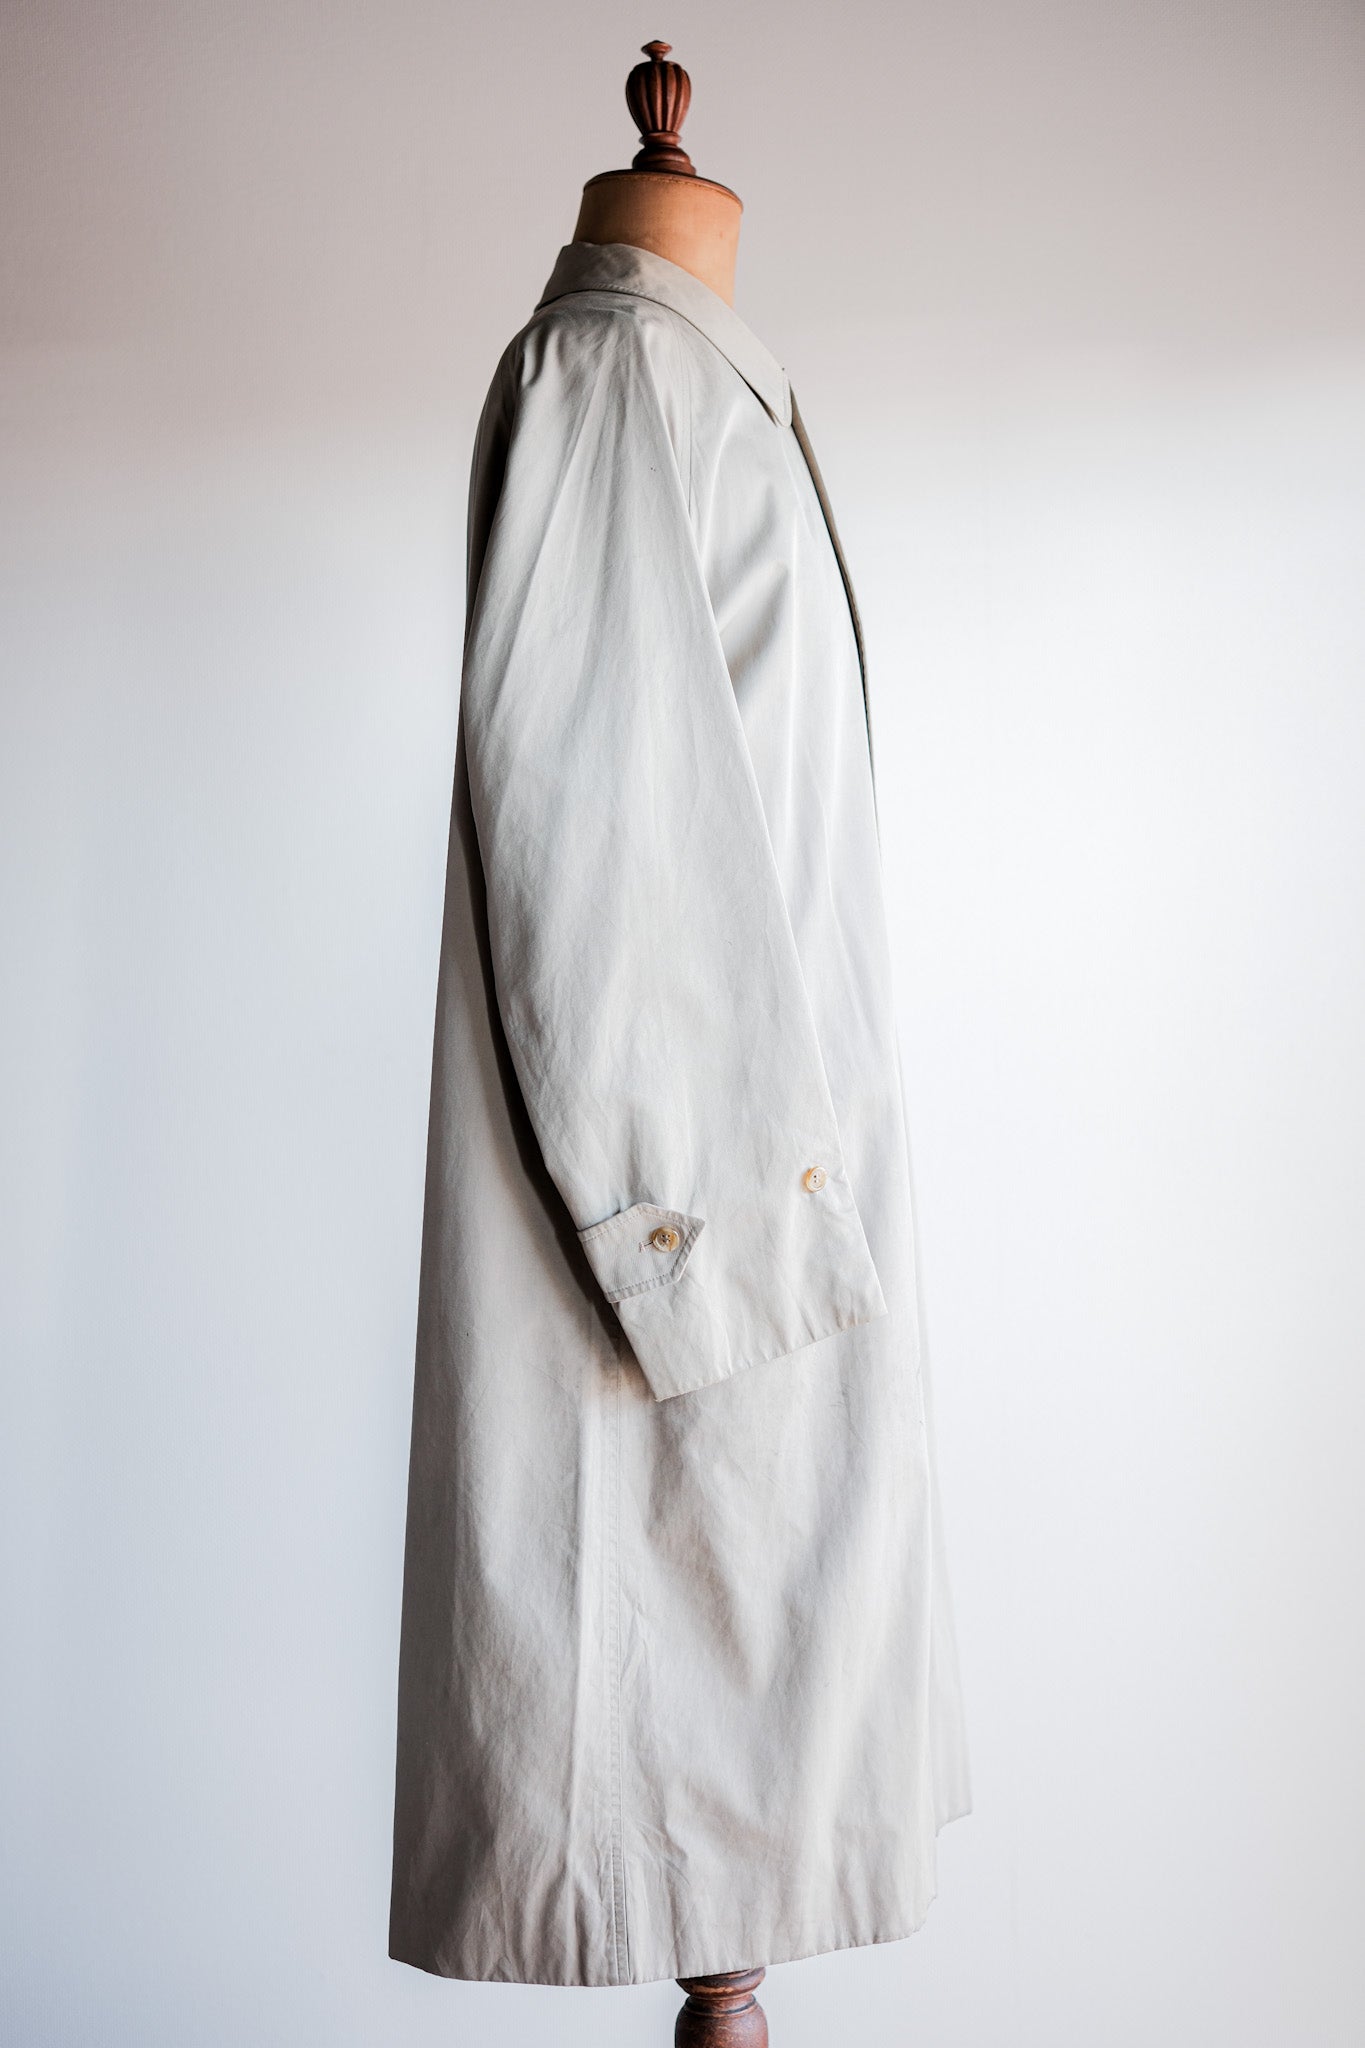 [~ 80 년대] 빈티지 버버리 싱글 라글란 발마 카안 코트 C100 크기.